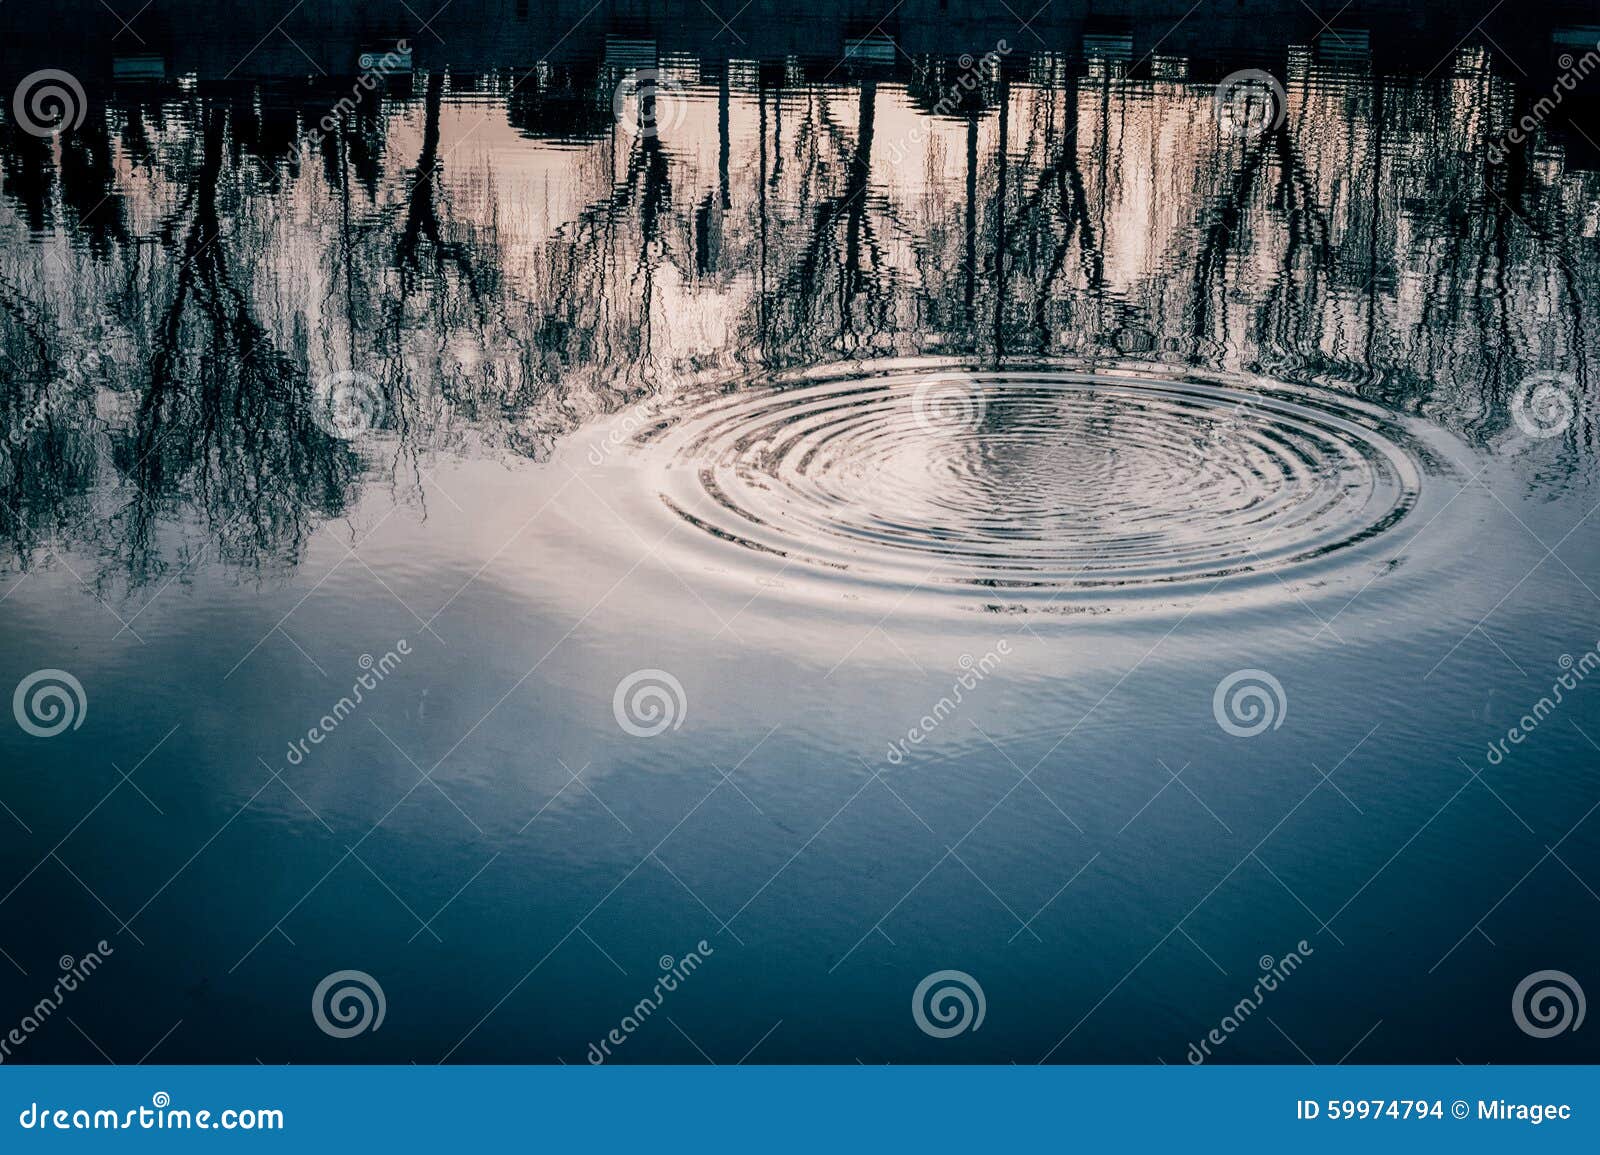 Кольца в озерах. Кольцо воды. Круги на воде озеро. Кольцо на поверхности воды. Кольца на воде текстура.